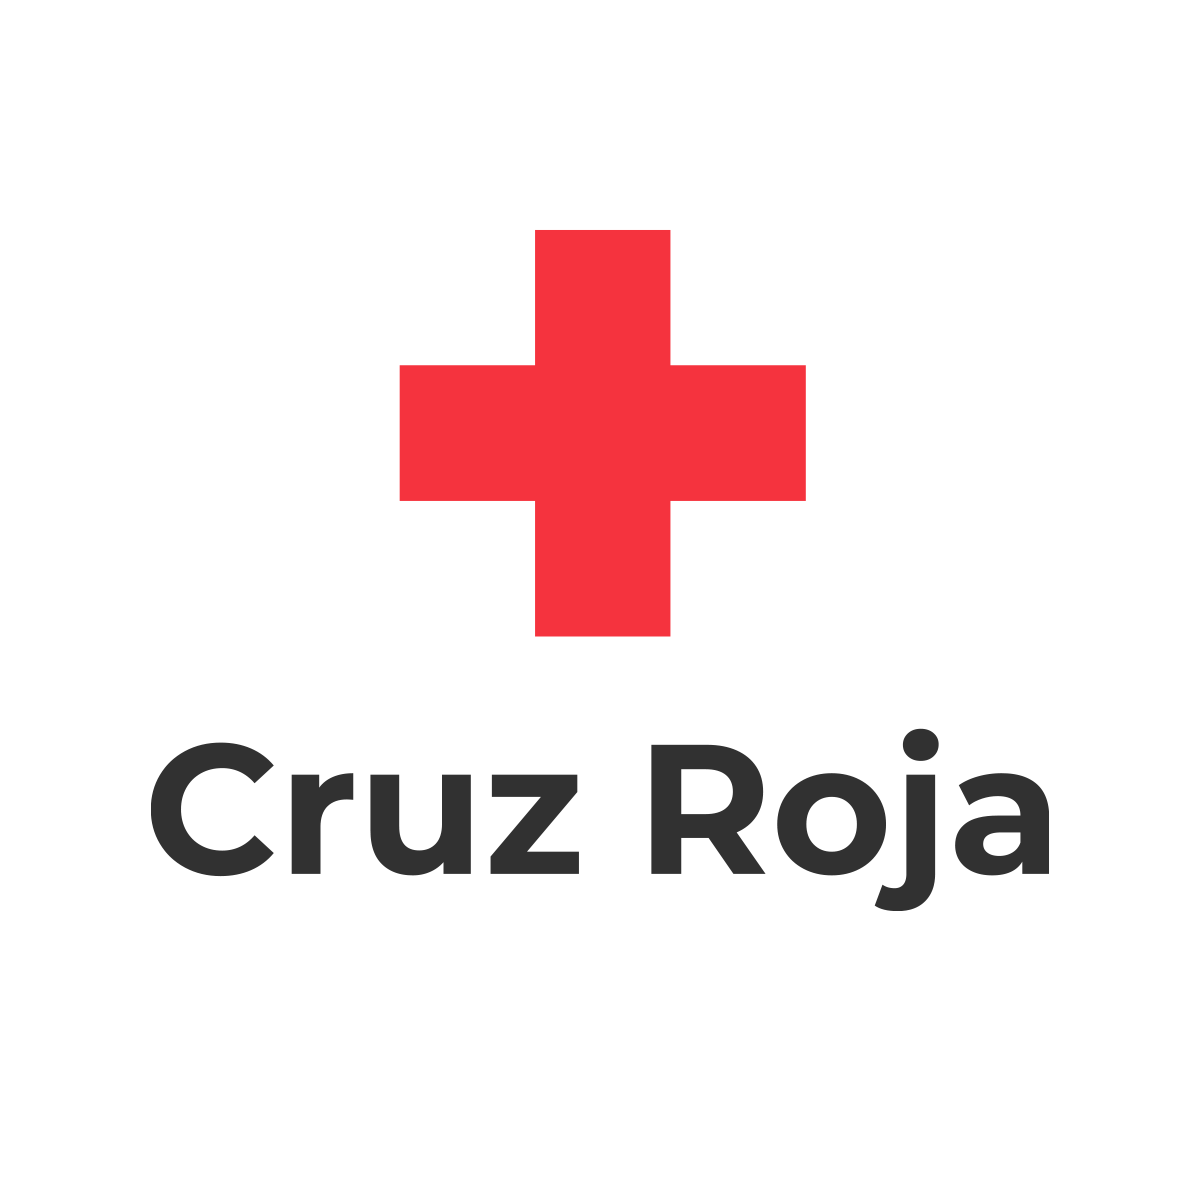 📌Hoy celebramos #DíaMundialdelaCruzRoja Desde @proteccioncivil @interiorgob queremos agradecer a @CruzRojaEsp @CRE_Emergencias su contribución en labores de #emergencia y su labor humanitaria